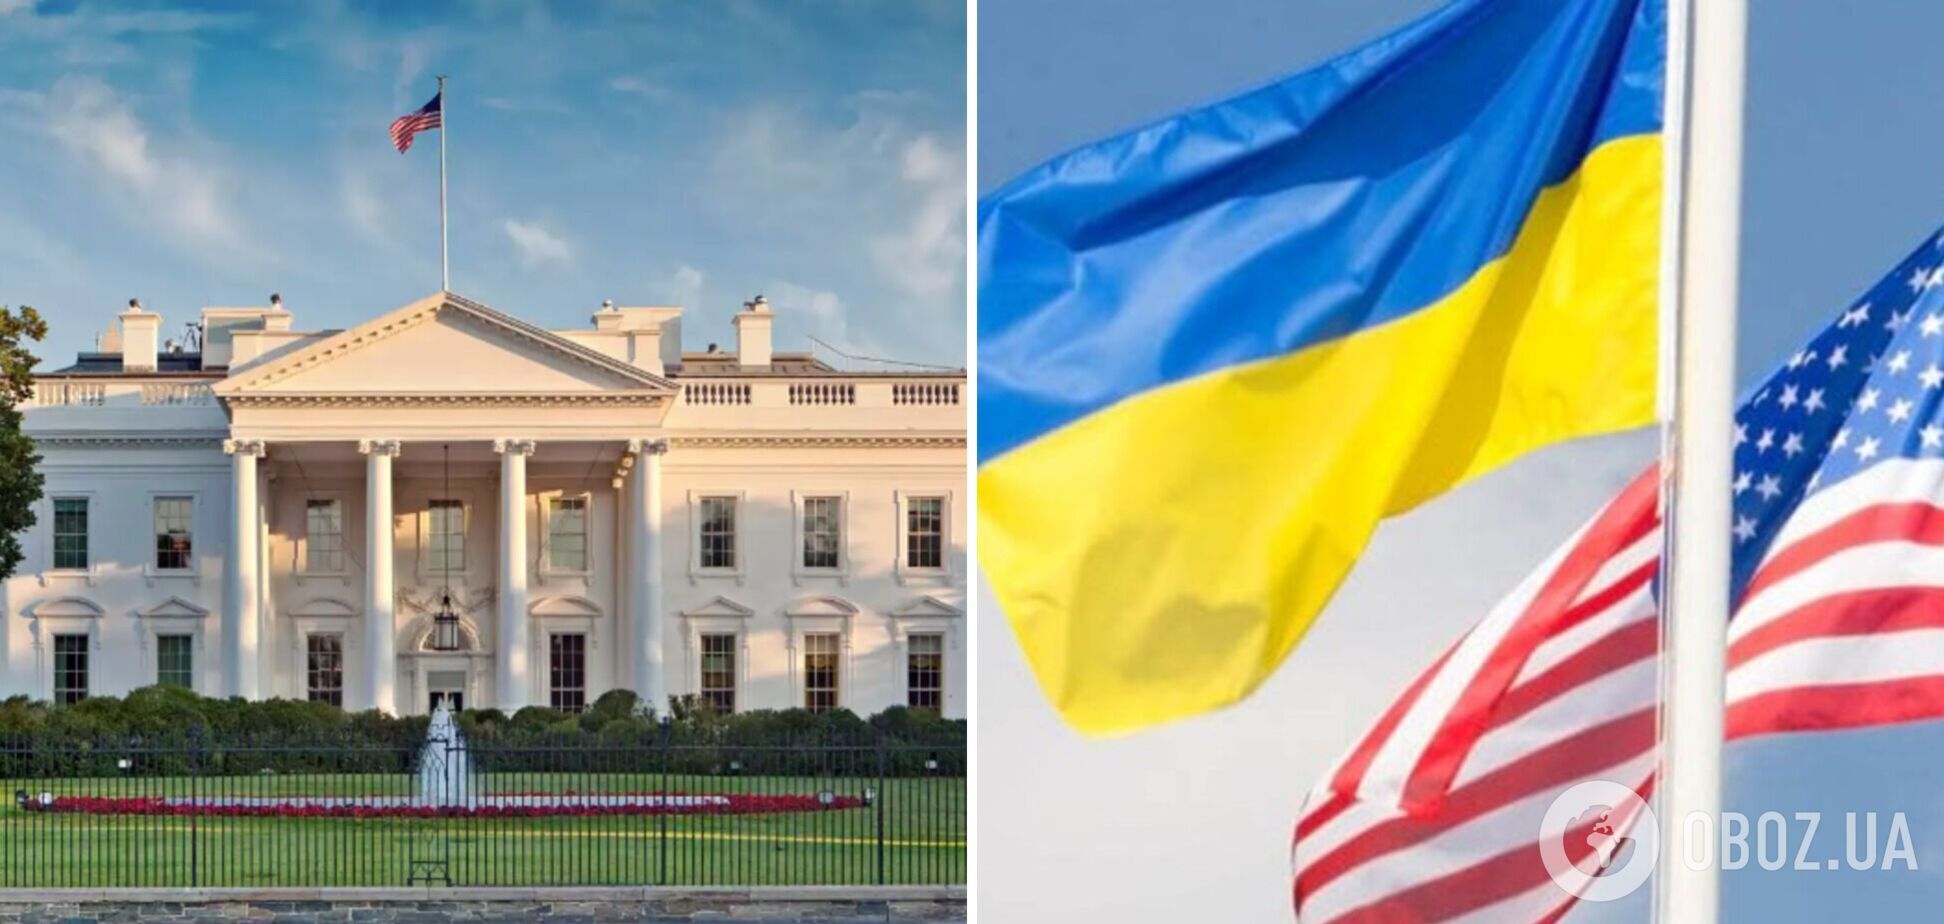  Українська делегація прибула до Вашингтона: заплановано низку перемовин у Білому домі і Конгресі